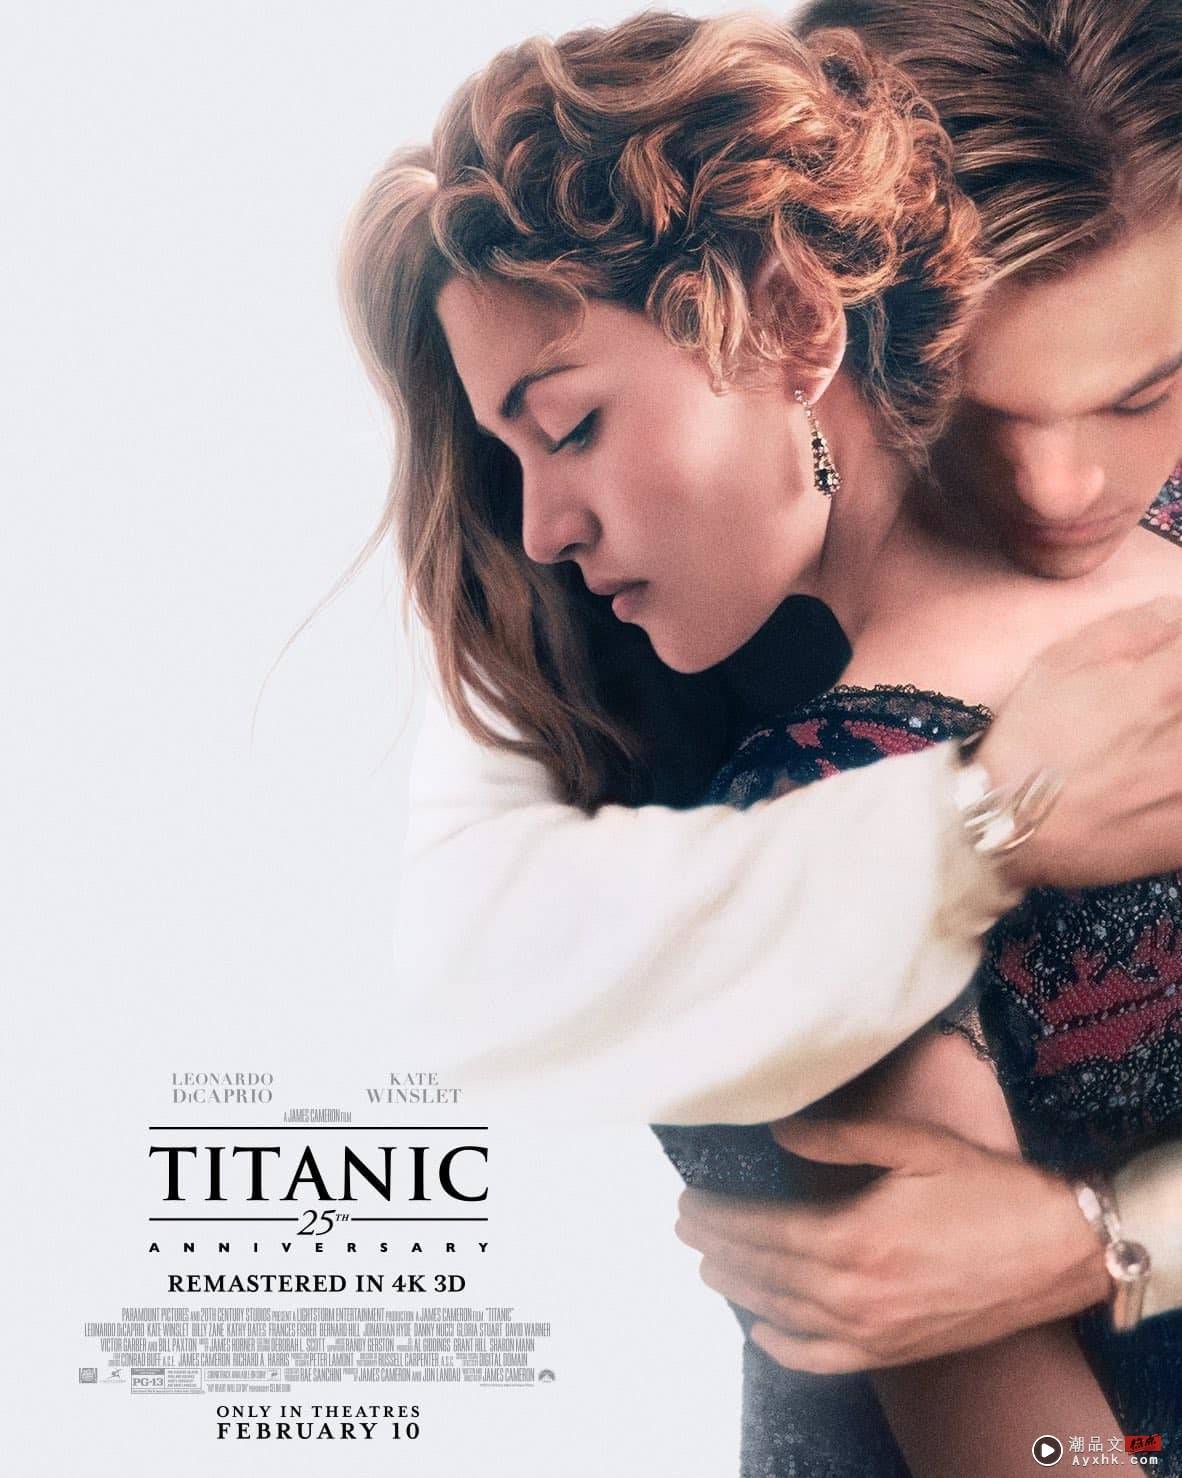 戏院重映Titanic IMAX 4K 3D版！马来西亚网友留言“火”了 娱乐资讯 图1张